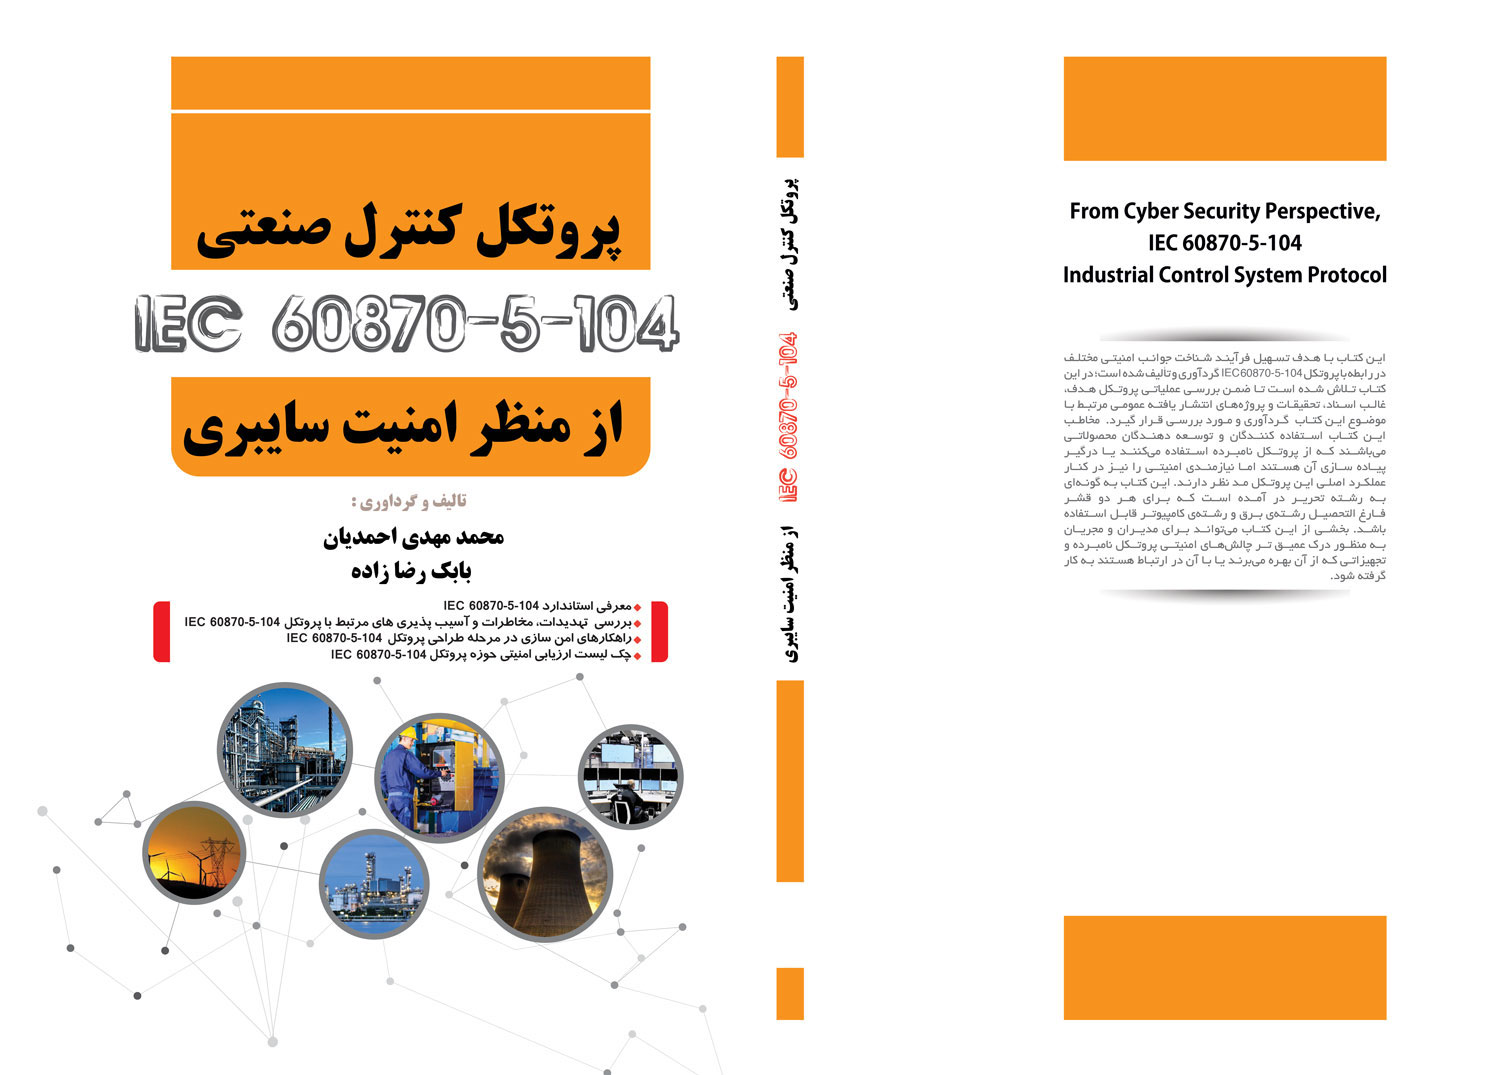 امنیت اتوماسیون صنعتی و اسکادا: انتشار کتاب پروتکل کنترل صنعتی IEC 60870-5-104 از منظر امنیت سایبری